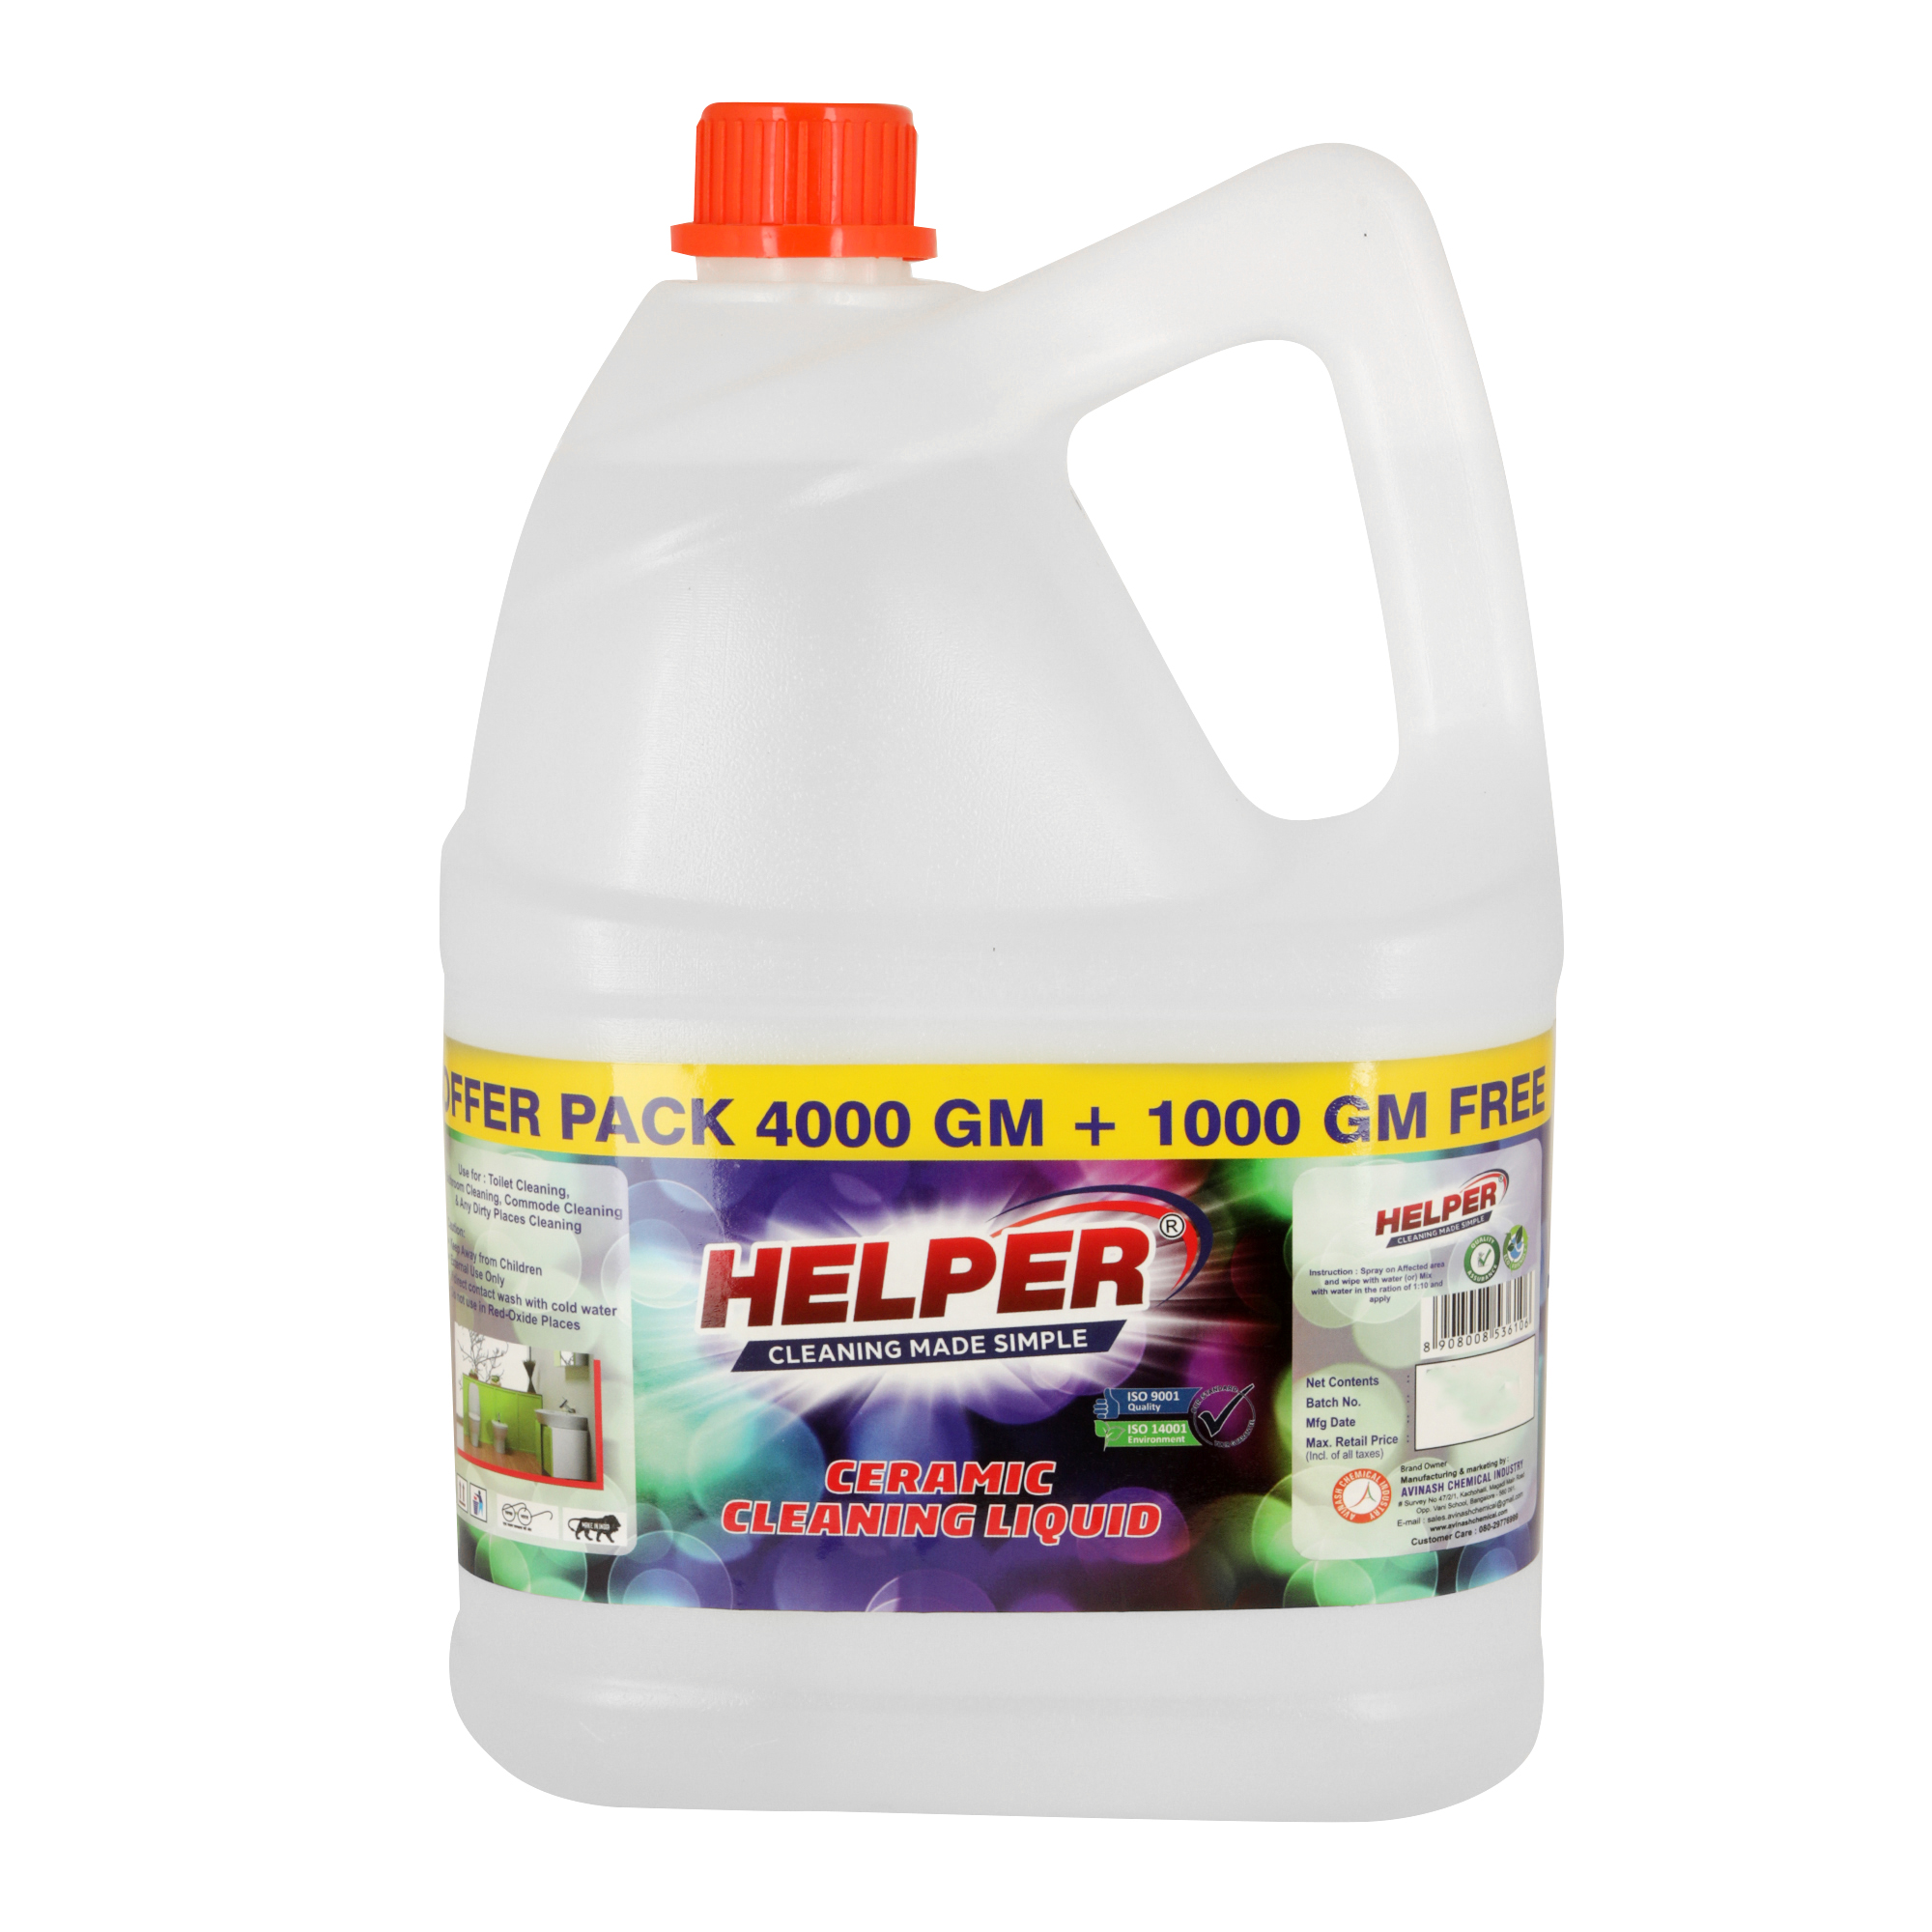 Helper Ceramic Cleaning Liquid, 5L Can